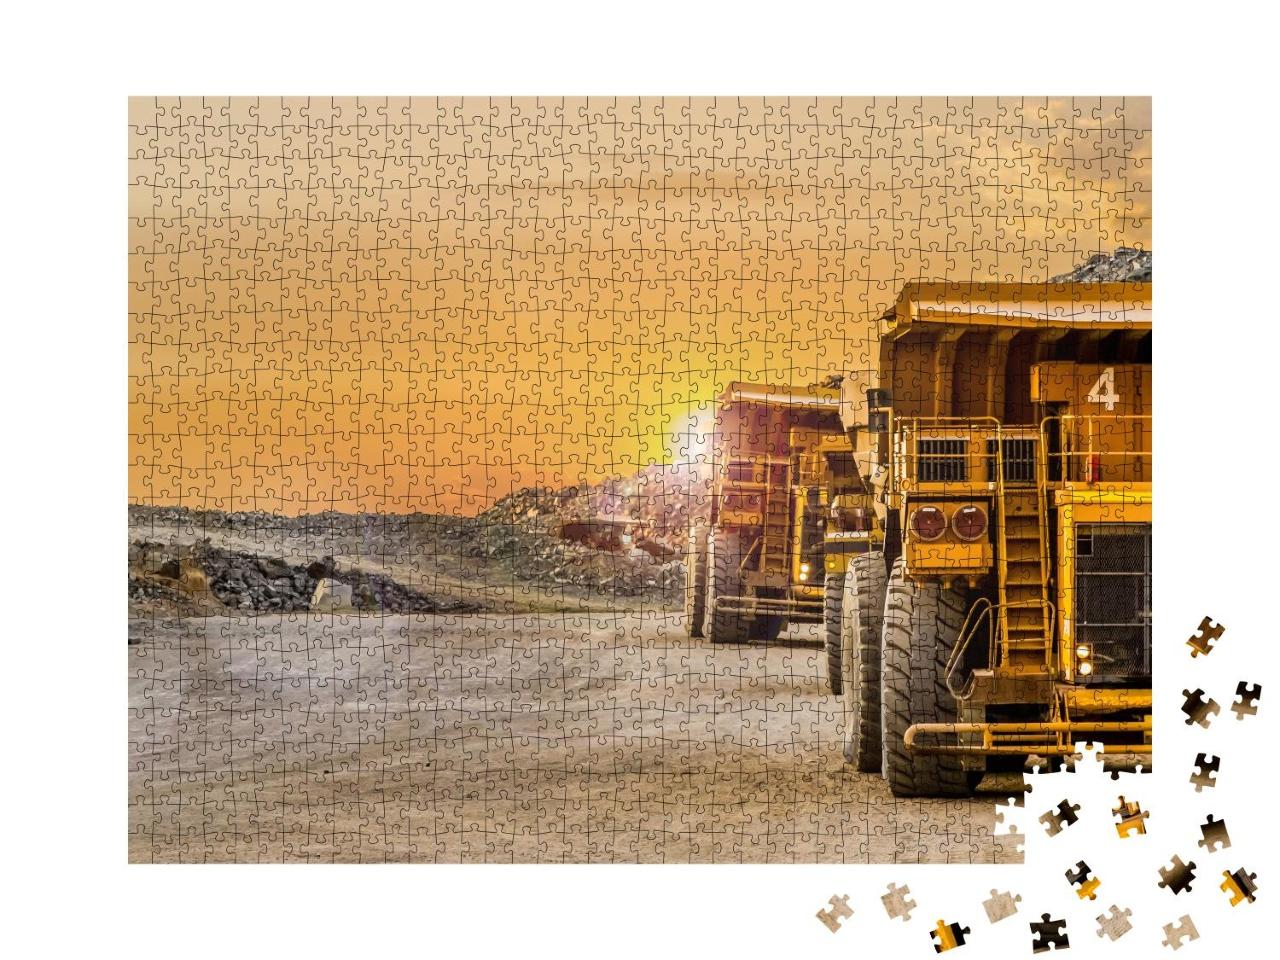 Puzzle 1000 Teile „Muldenkipper beim Transport von Erz und Edelmetallen“